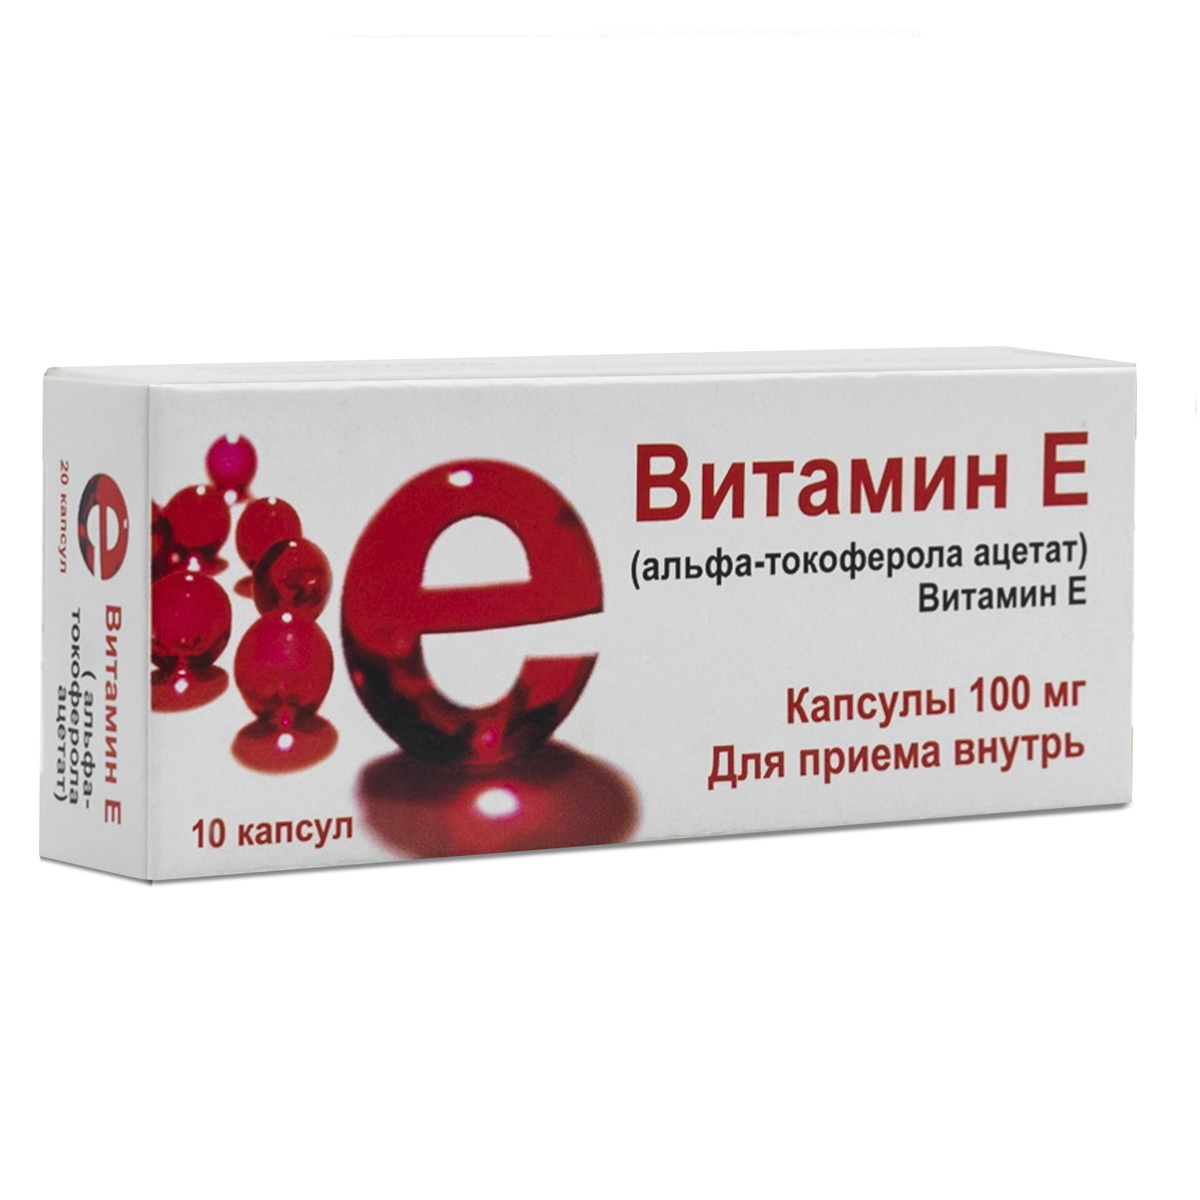 Витамин Е, капсулы 100 мг (Мелиген), 10 шт.